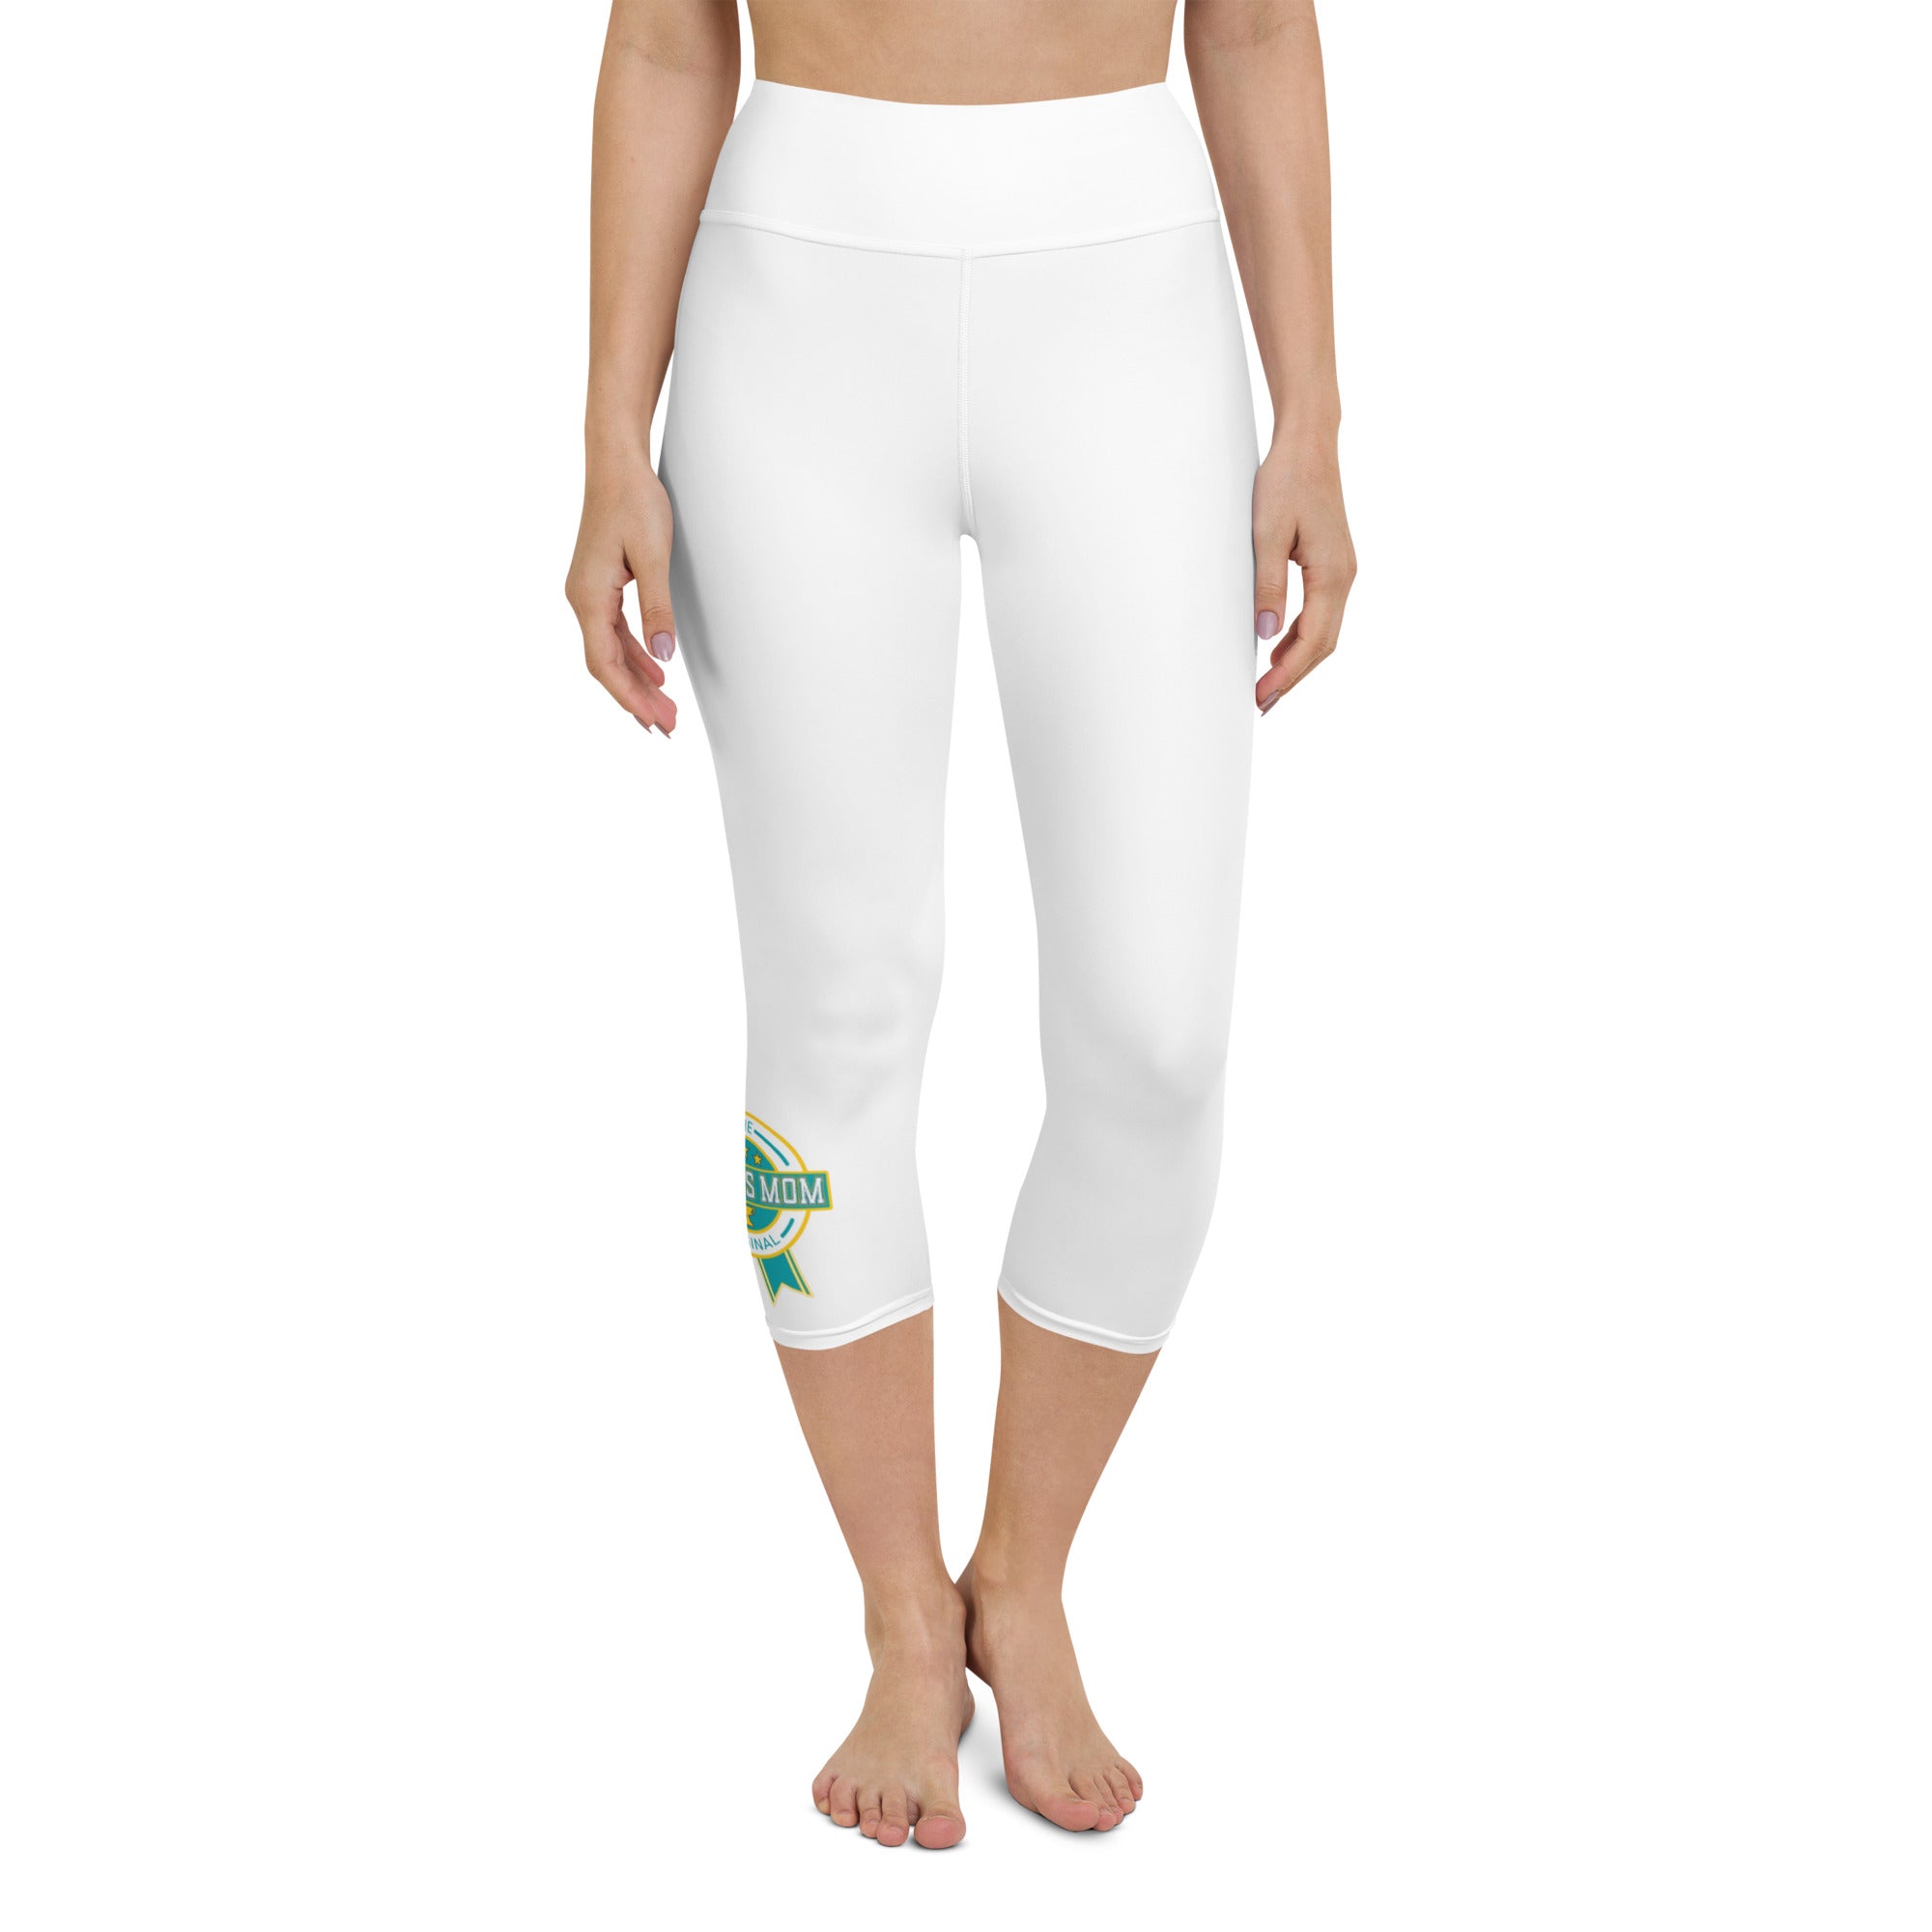 OSM - Yoga Capri Leggings - White